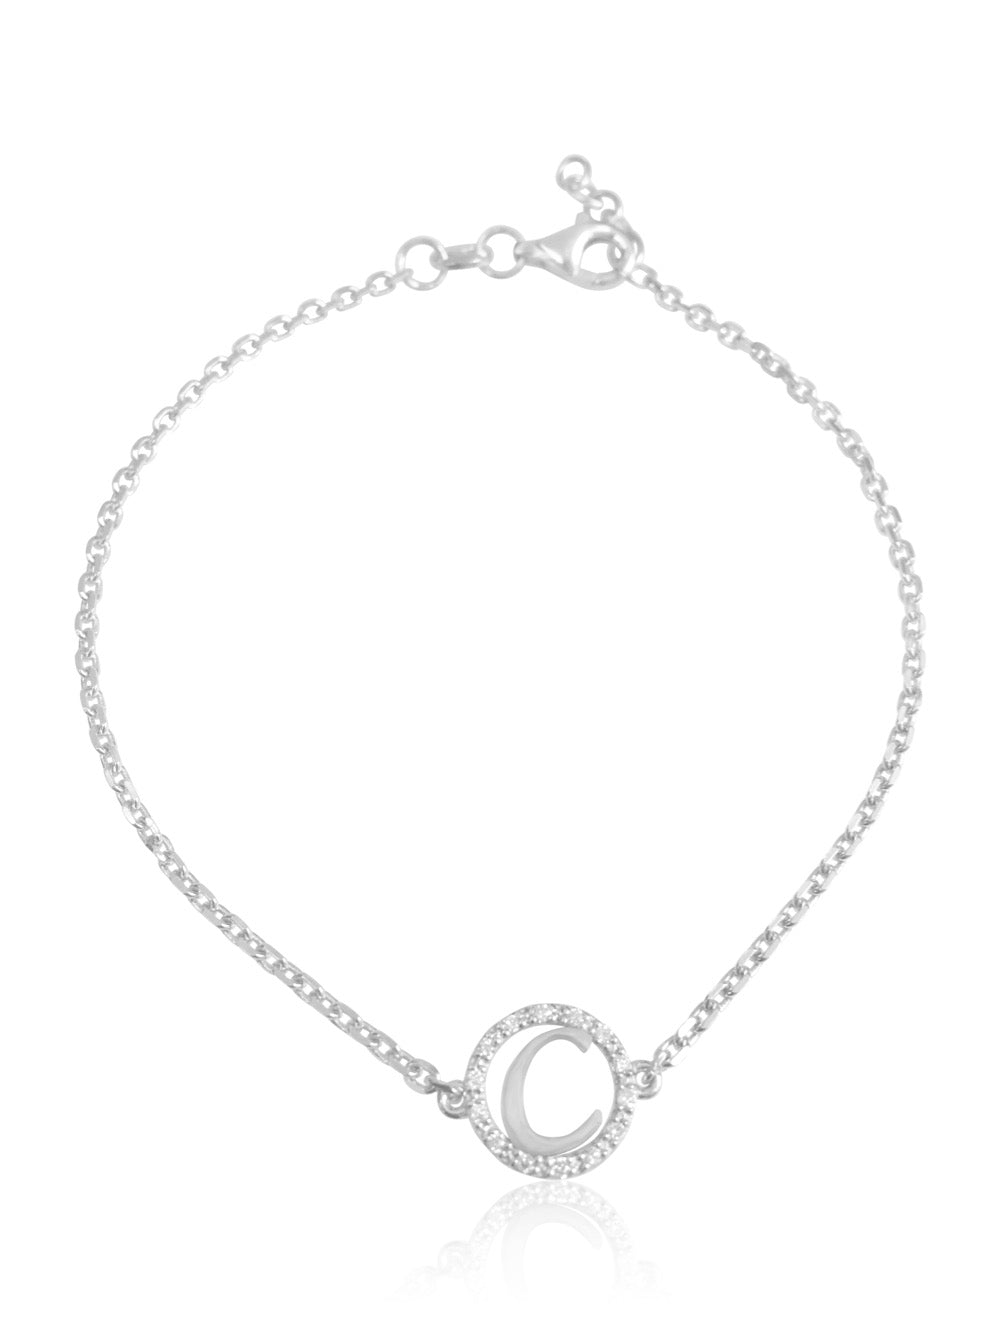 keila jewelry 14K Diamond Halo Initial Bracelet white gold